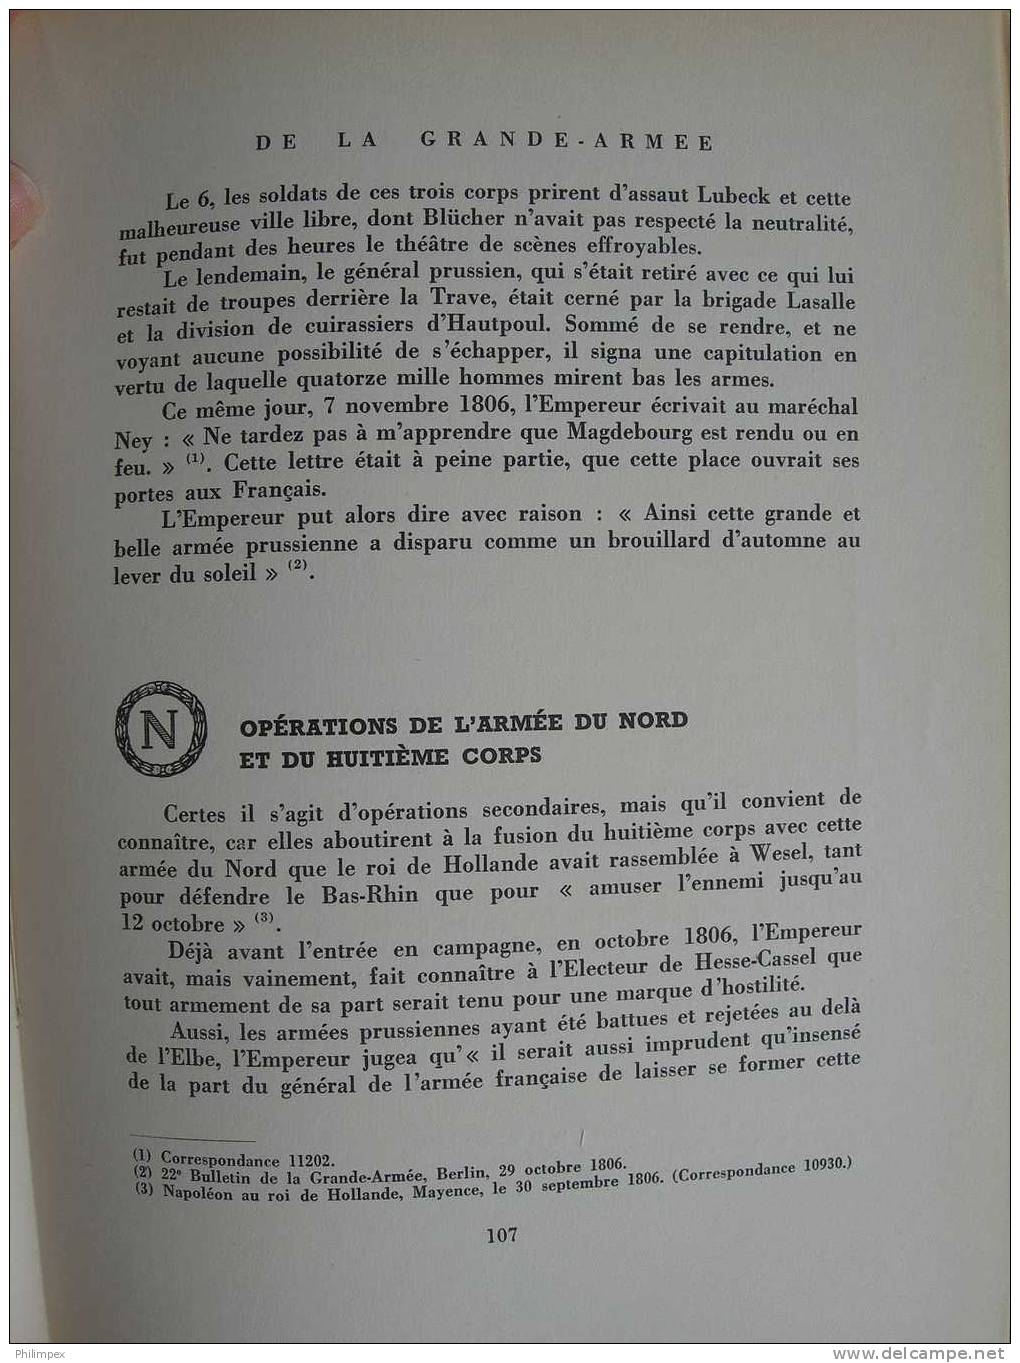 LES MARQUES POSTALES DE LA GRANDE ARMEE, 1948 - Poste Militaire & Histoire Postale